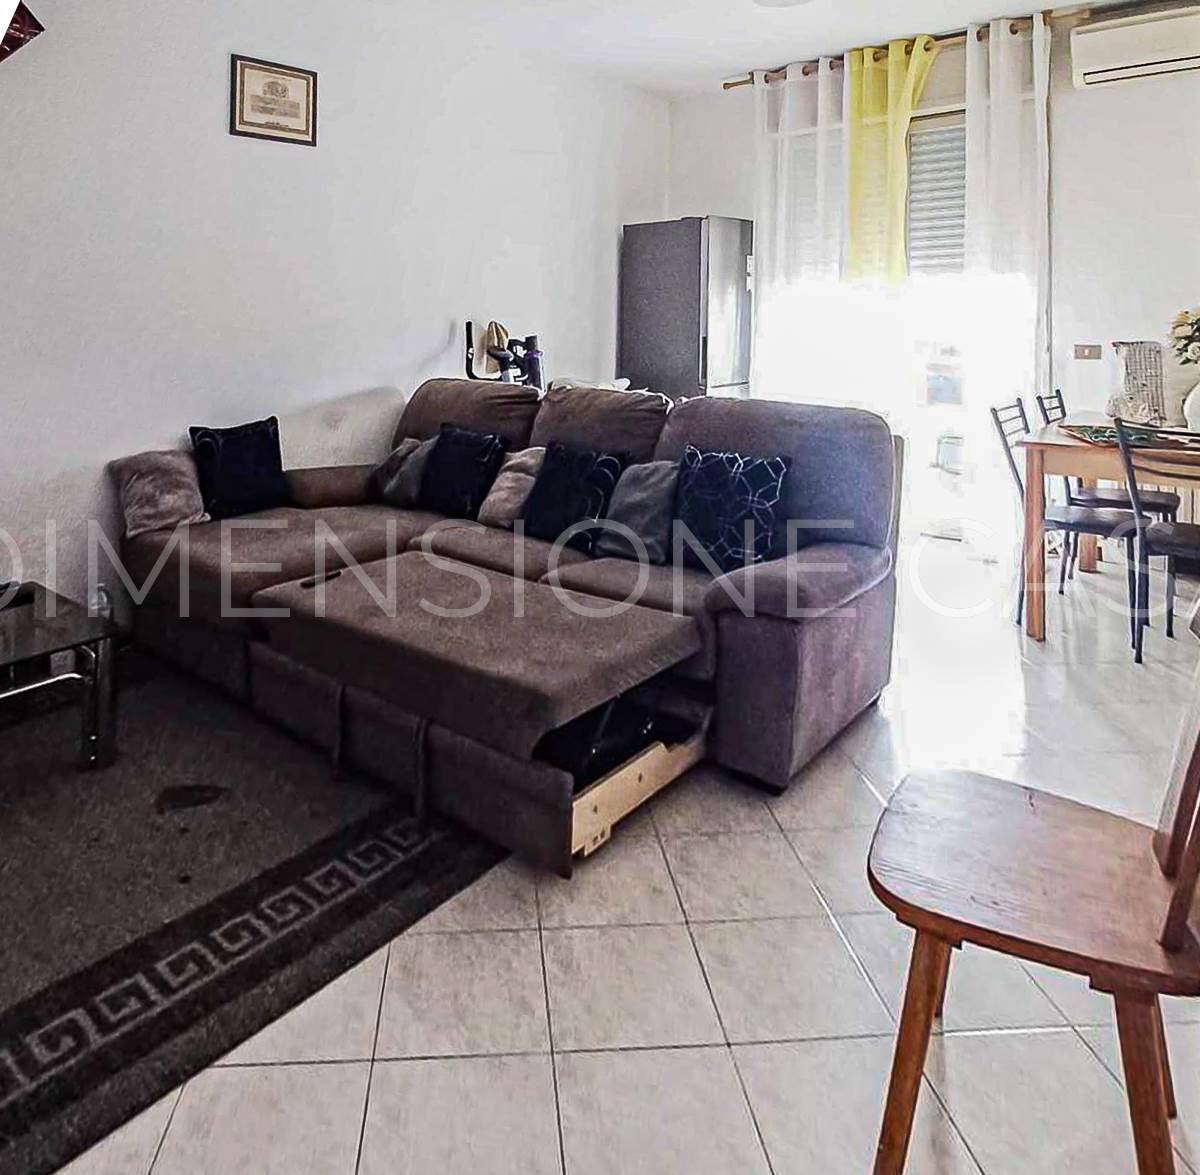 Appartamento in vendita a Rio Saliceto, 4 locali, prezzo € 125.000 | PortaleAgenzieImmobiliari.it